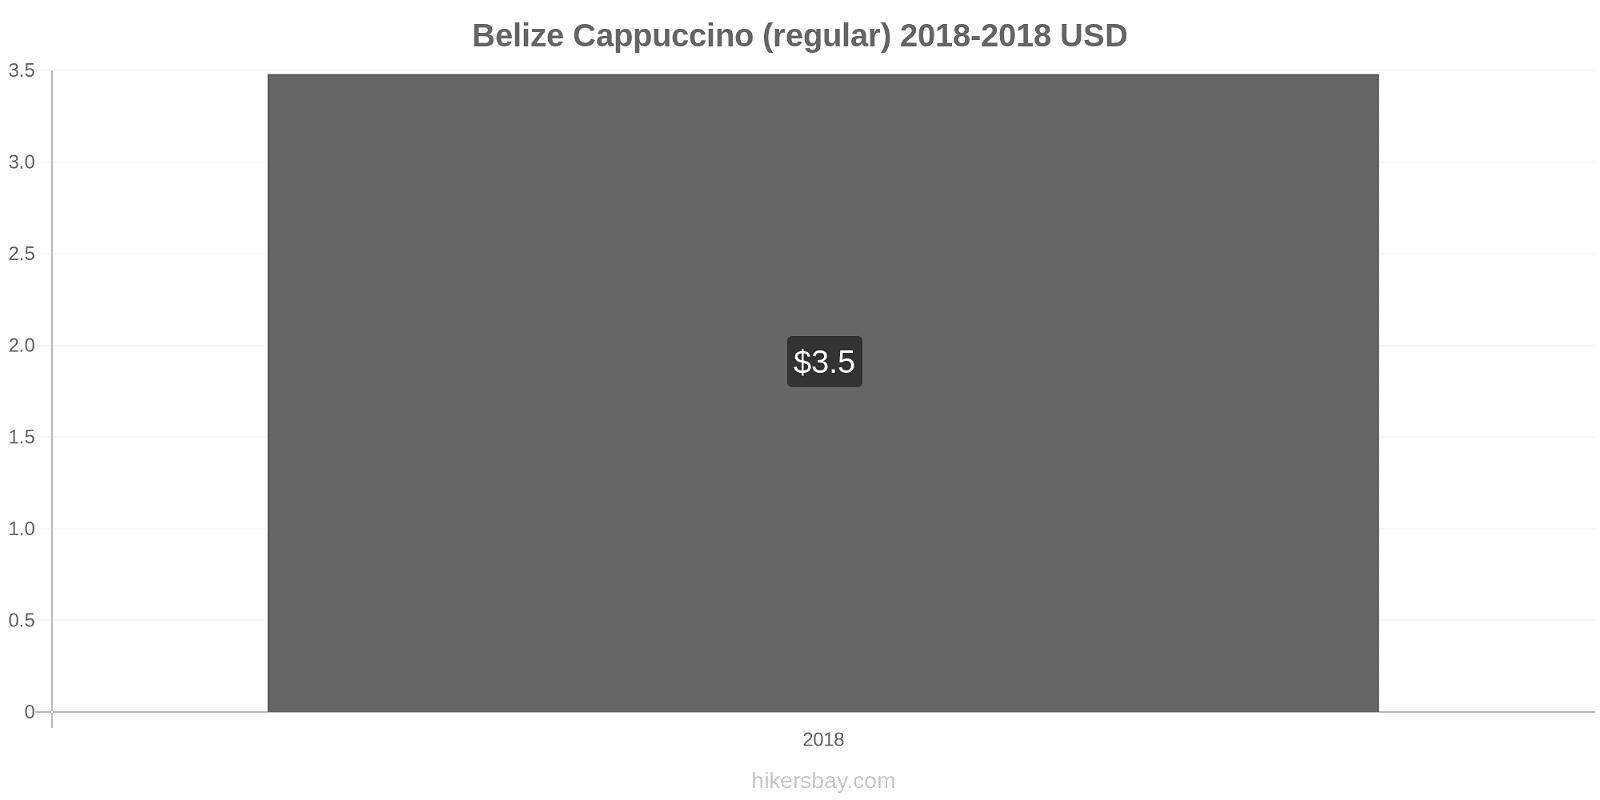 Belize price changes Cappuccino hikersbay.com